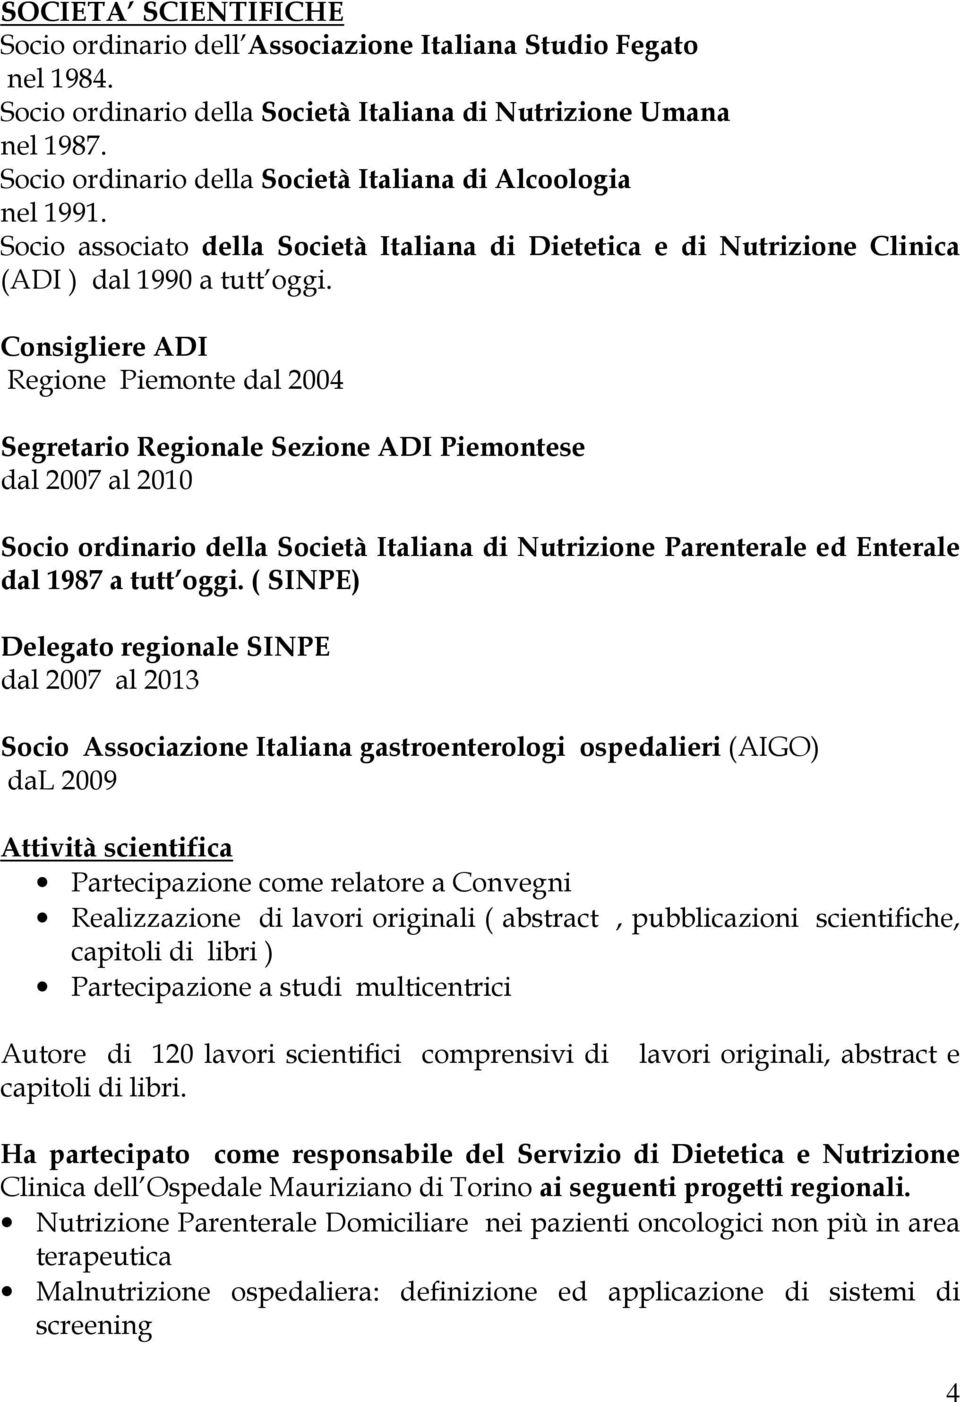 Consigliere ADI Regione Piemonte dal 2004 Segretario Regionale Sezione ADI Piemontese dal 2007 al 2010 Socio ordinario della Società Italiana di Nutrizione Parenterale ed Enterale dal 1987 a tutt